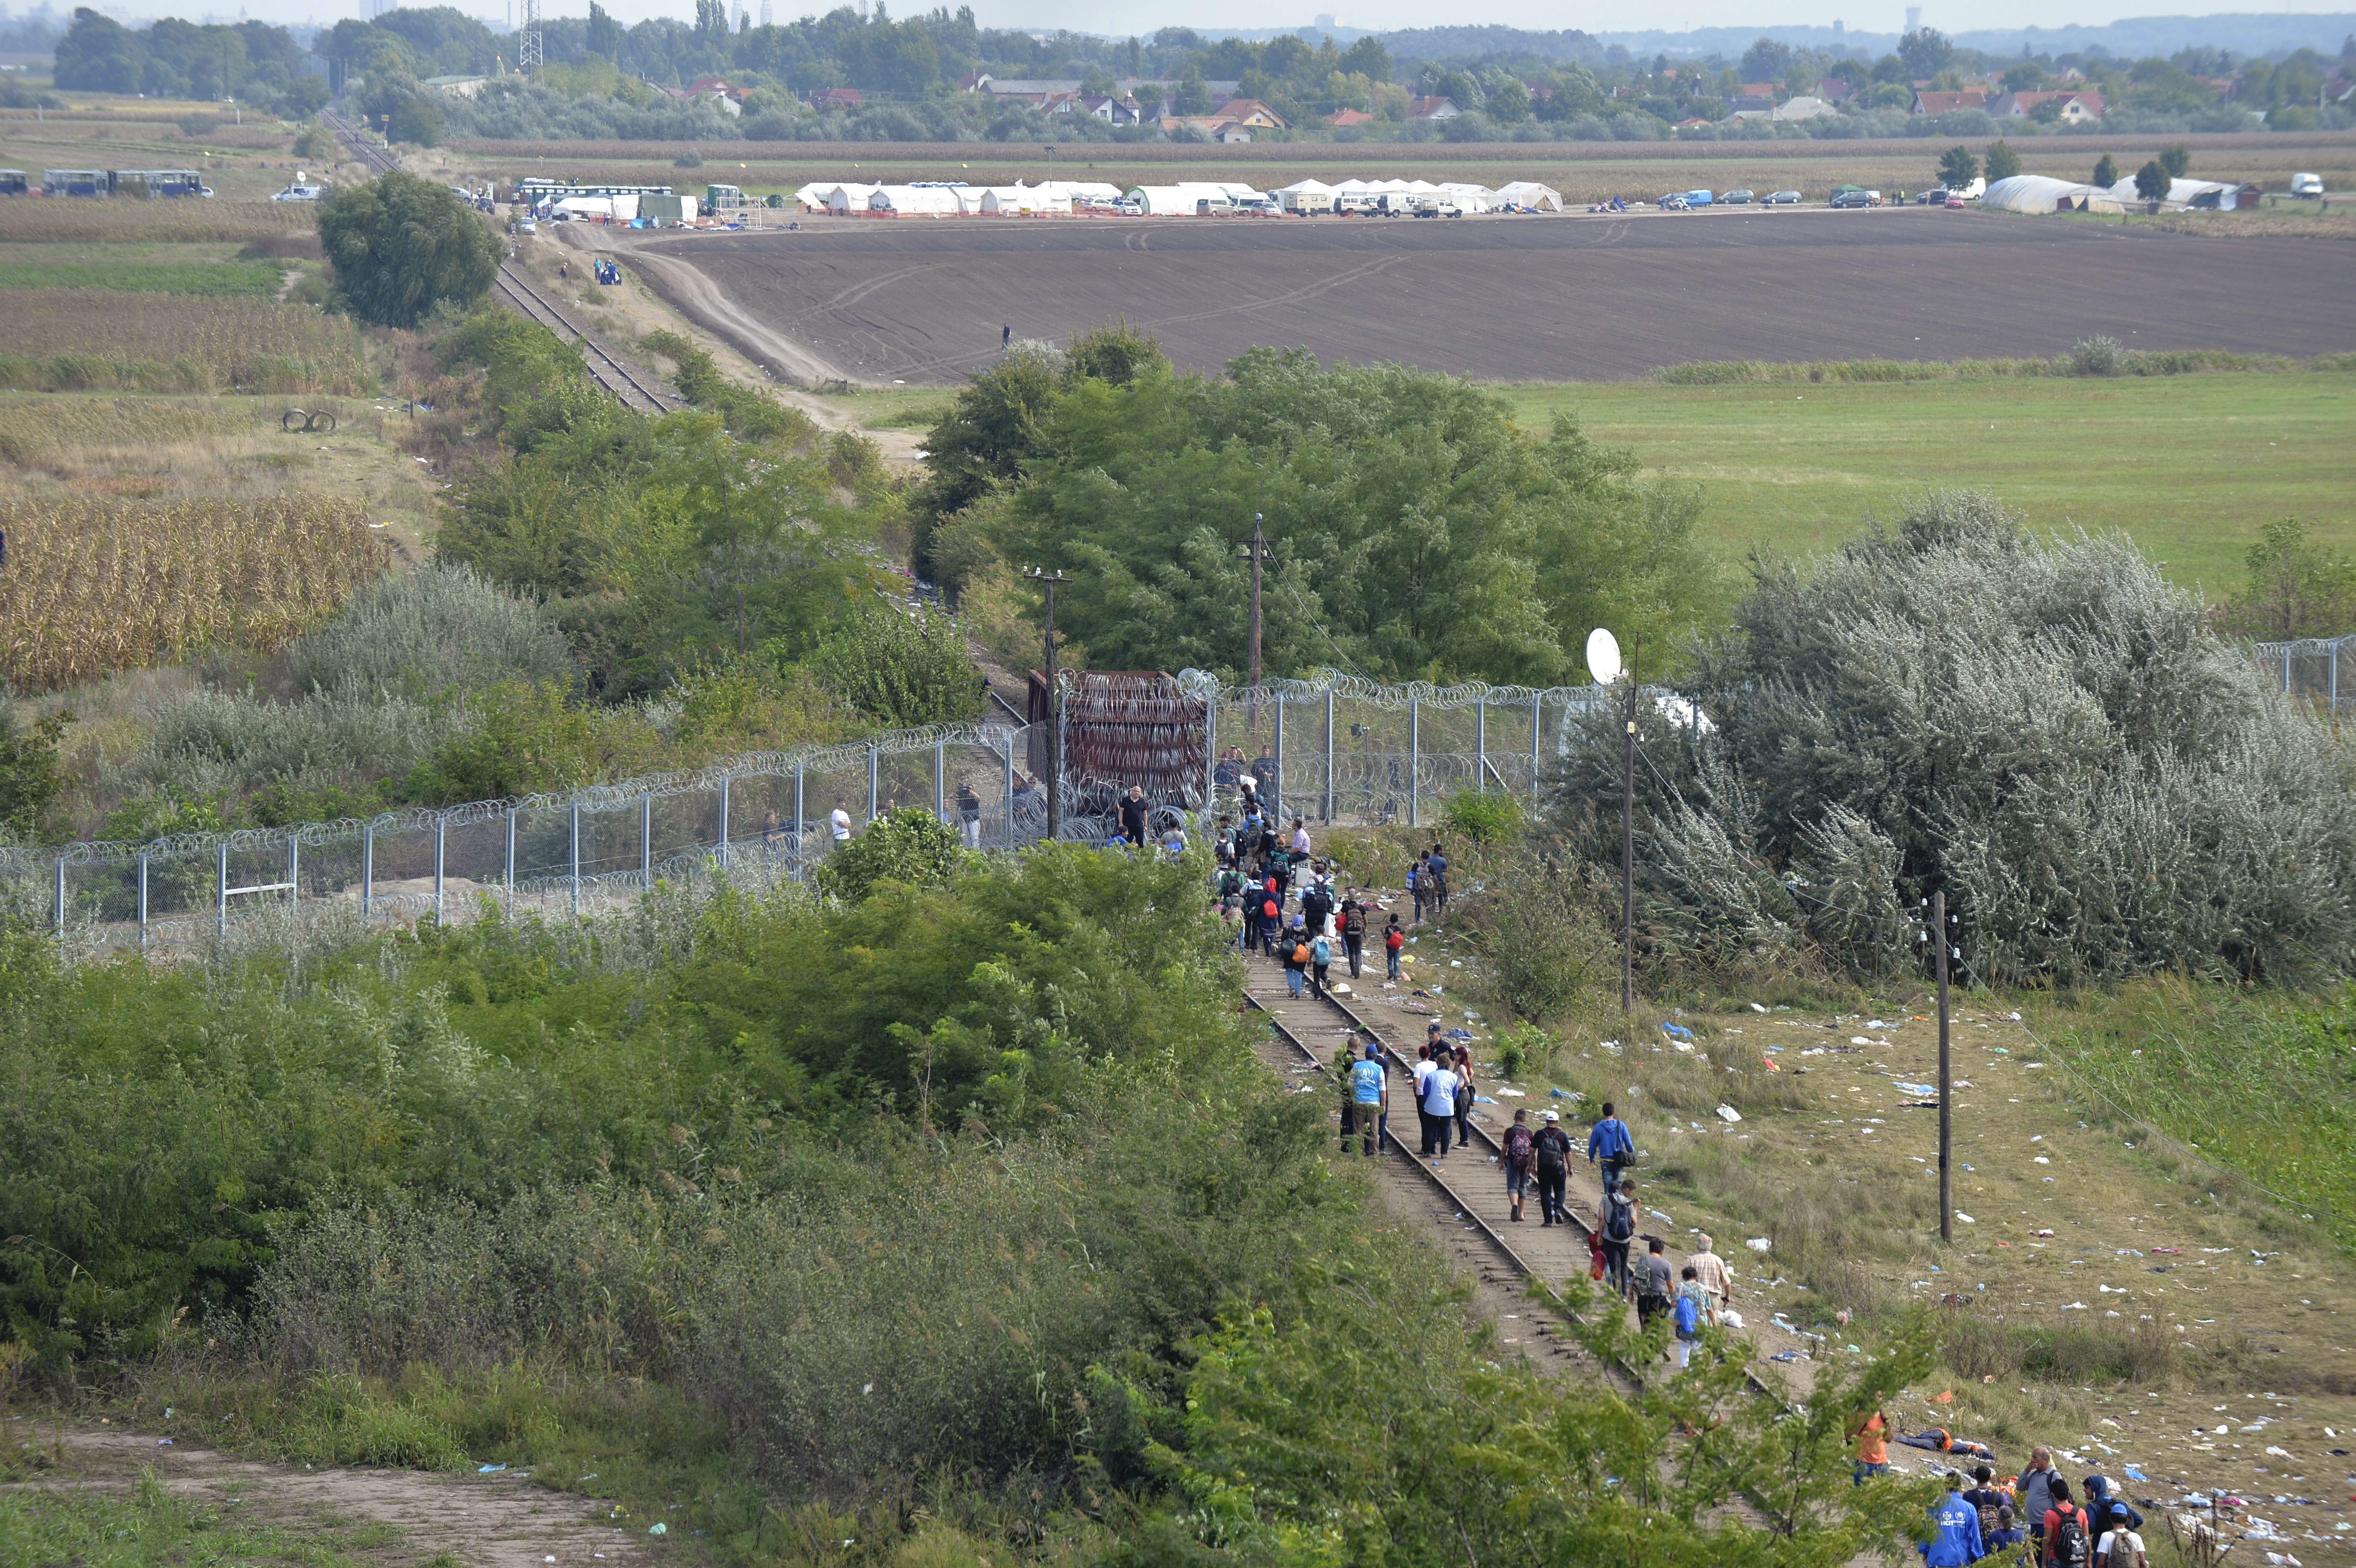  Migránsok a határzárként használt vasúti vagonnál a magyar-szerb határon, Röszke térségében 2015. szeptember 15-én. MTI Fotó: Máthé Zoltán